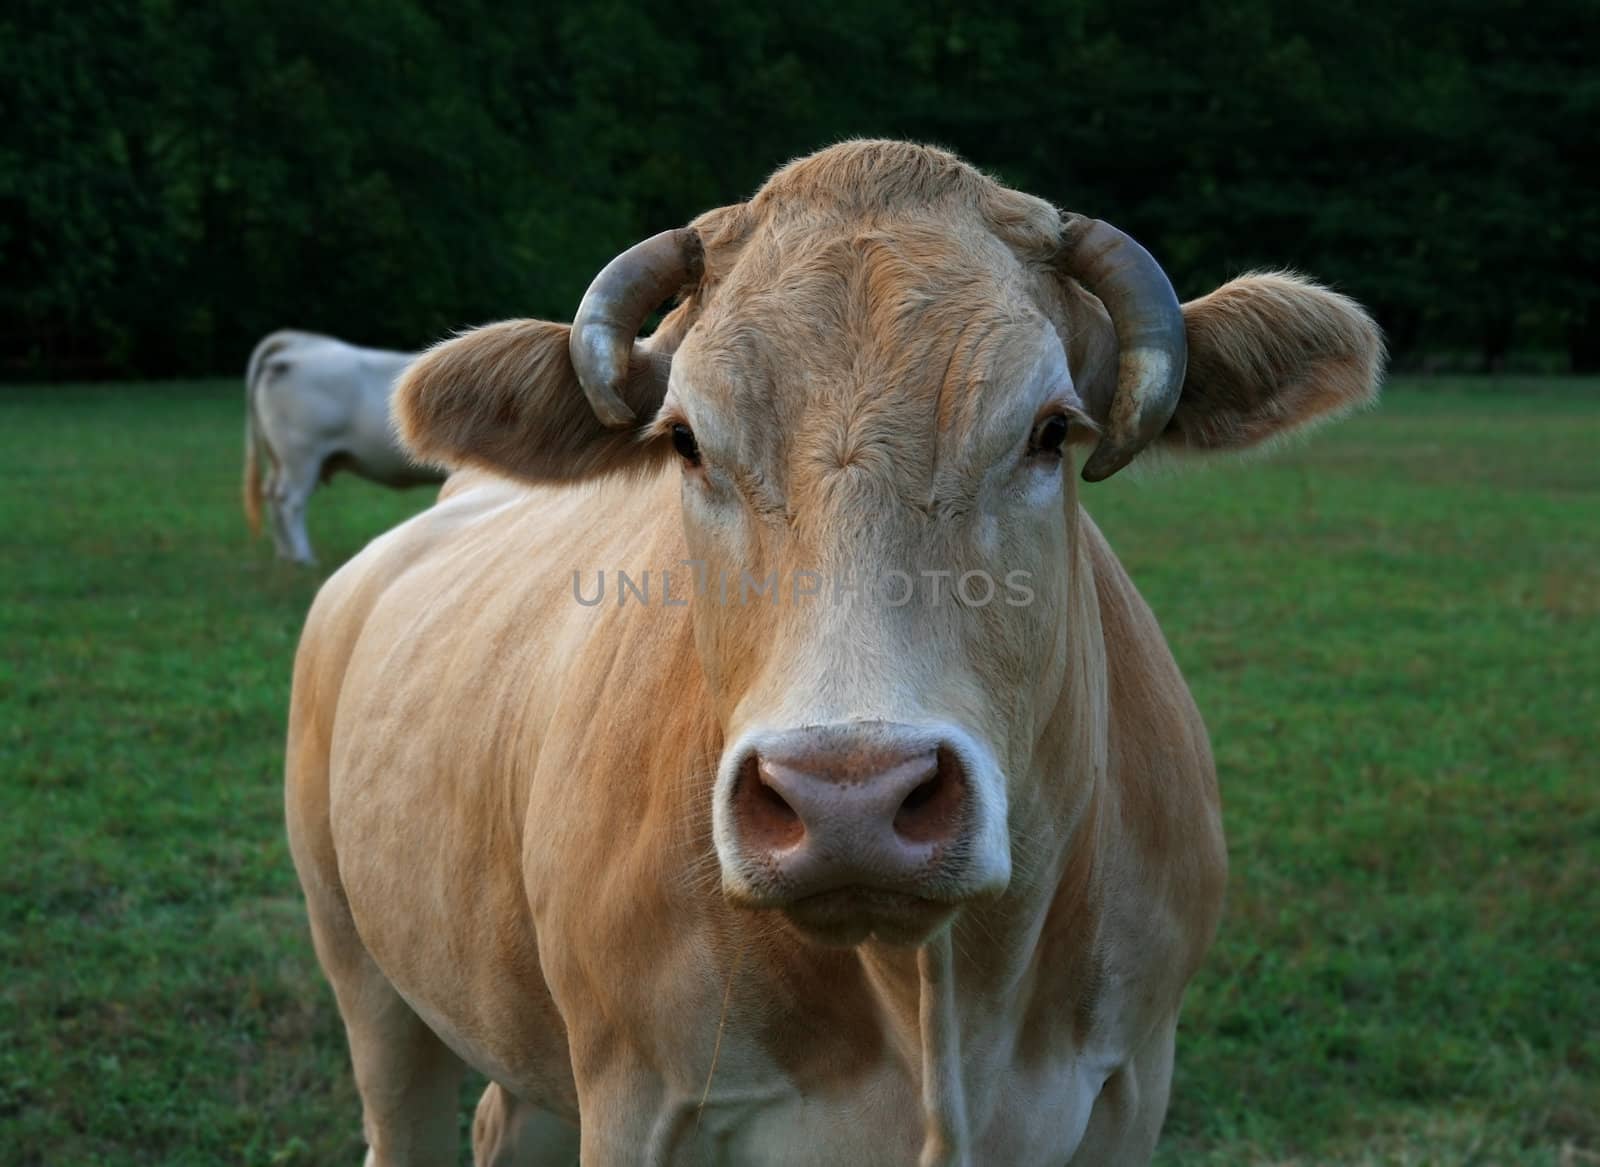 Cow head by daboost